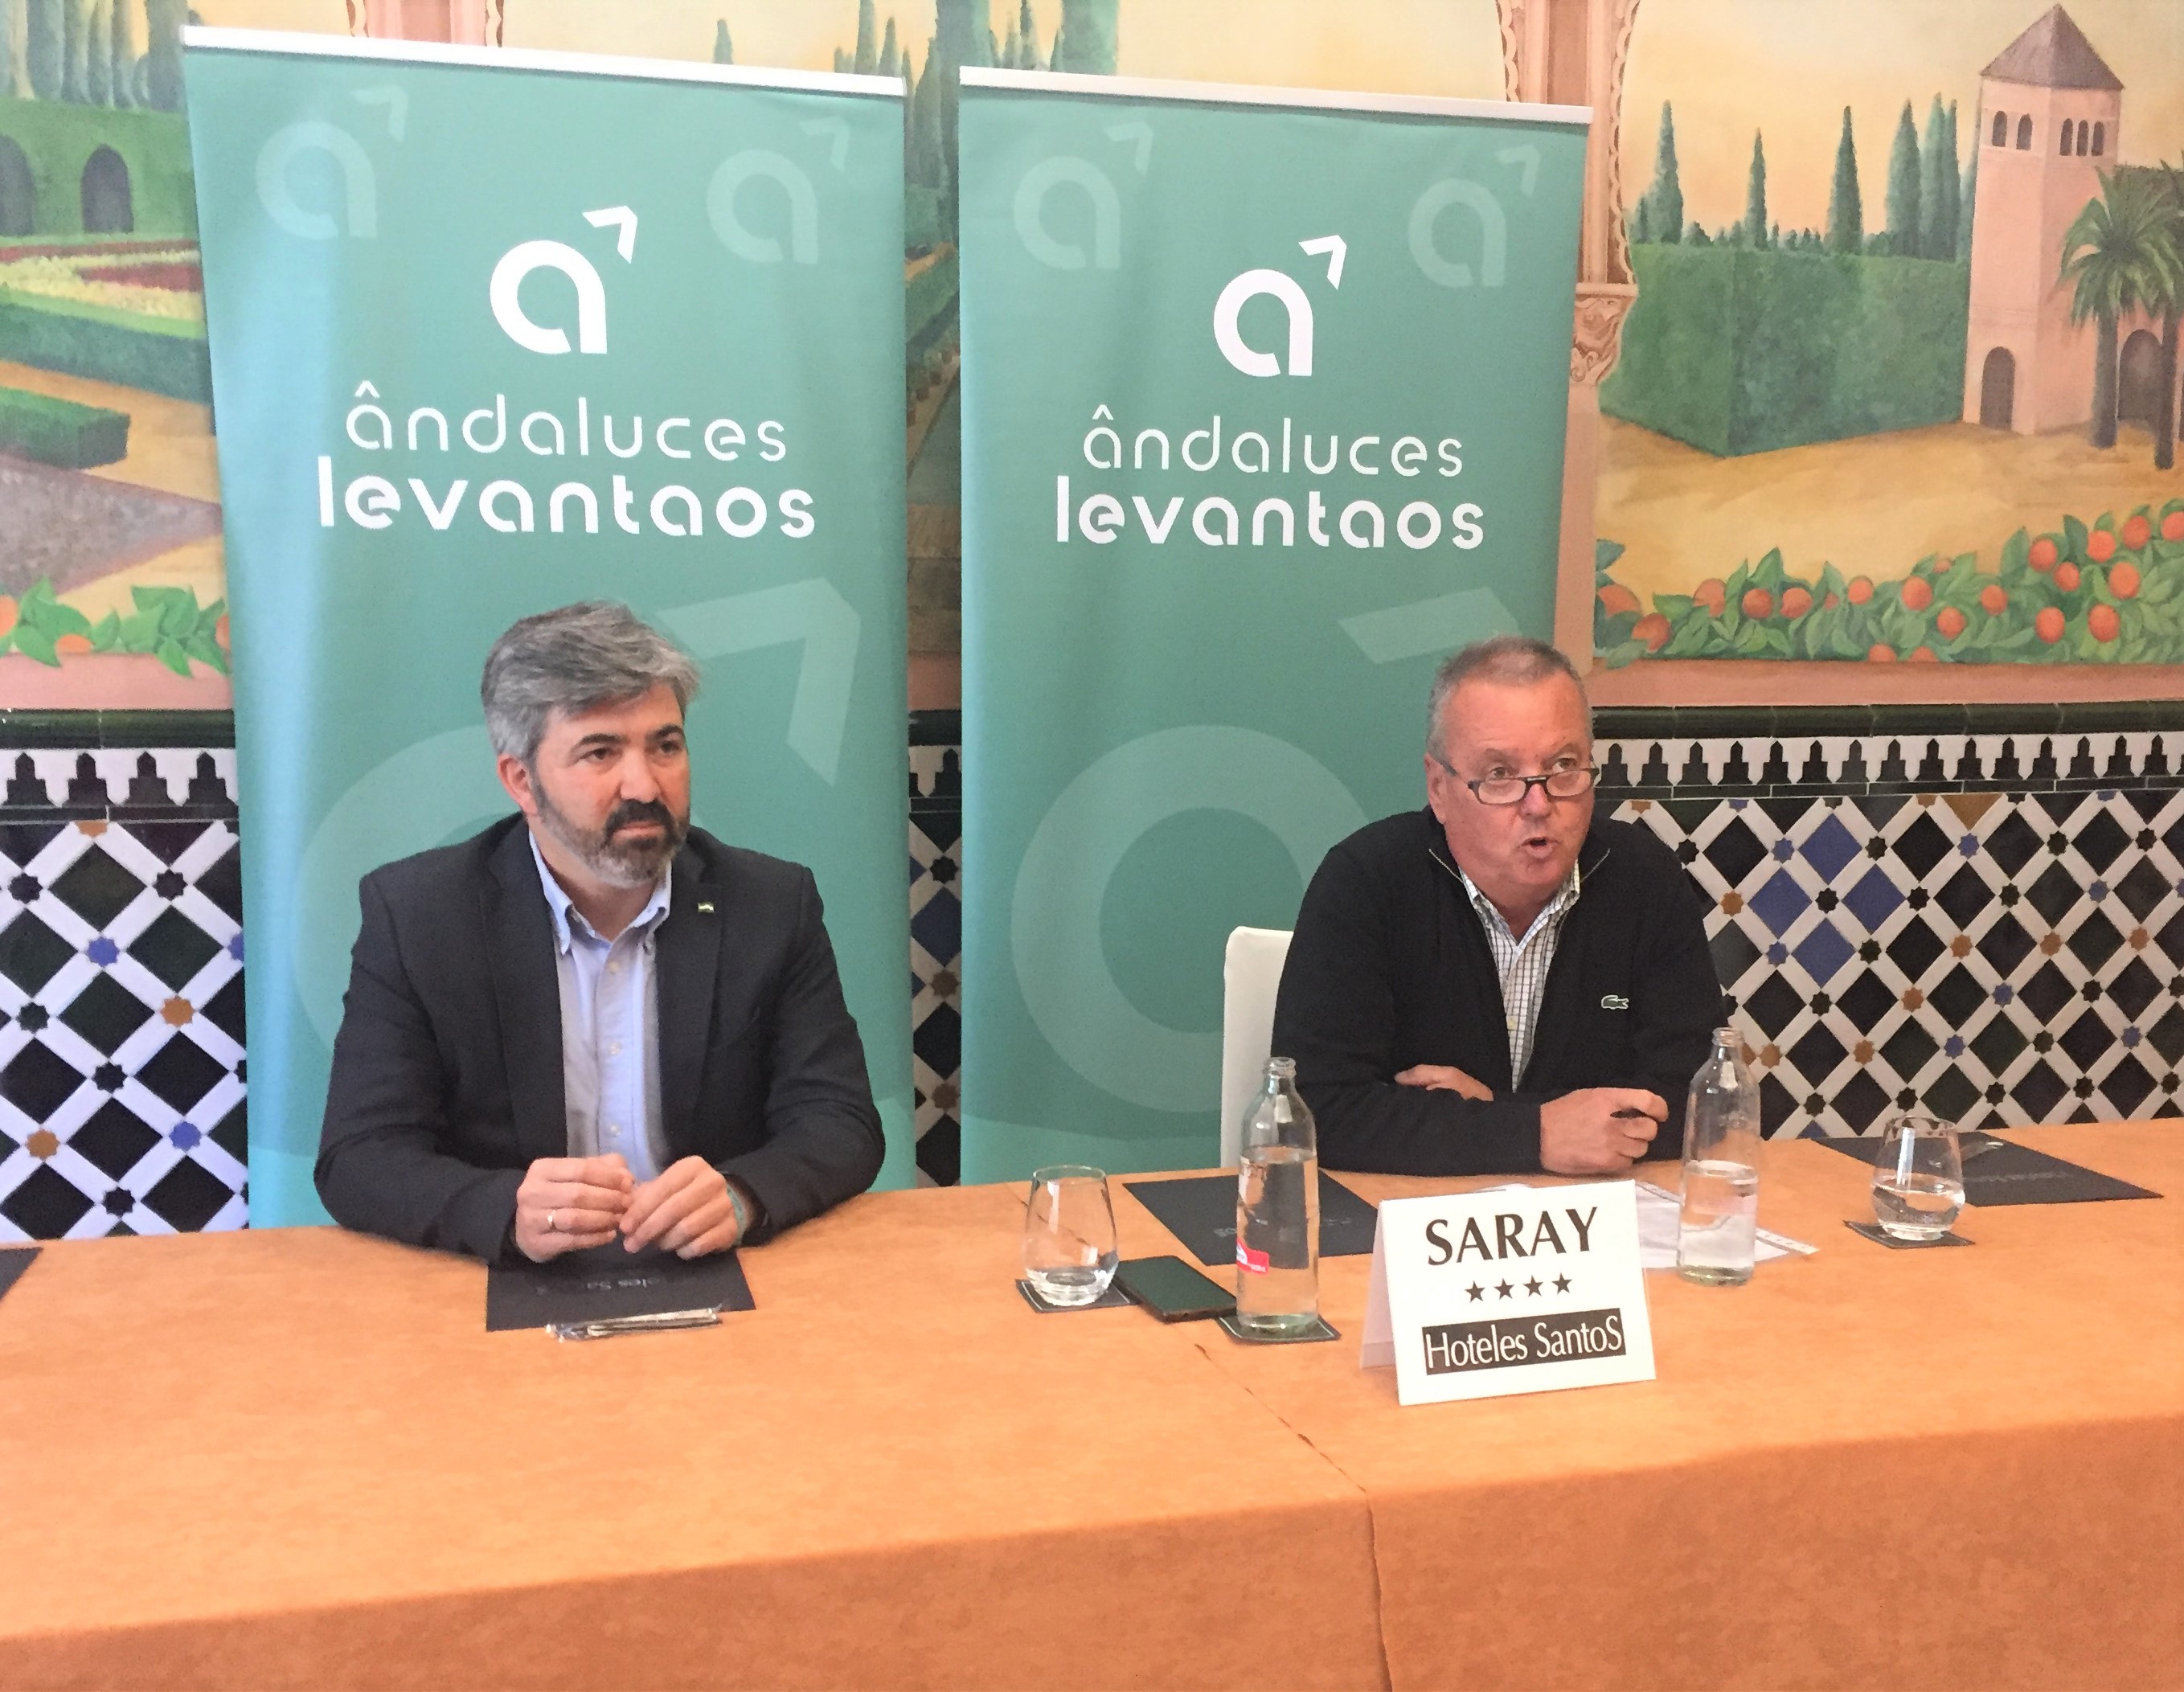 Convergencia Andaluza participar en el encuentro Orgullo Andalucista, que pretende impulsar el resurgir del andalucismo.